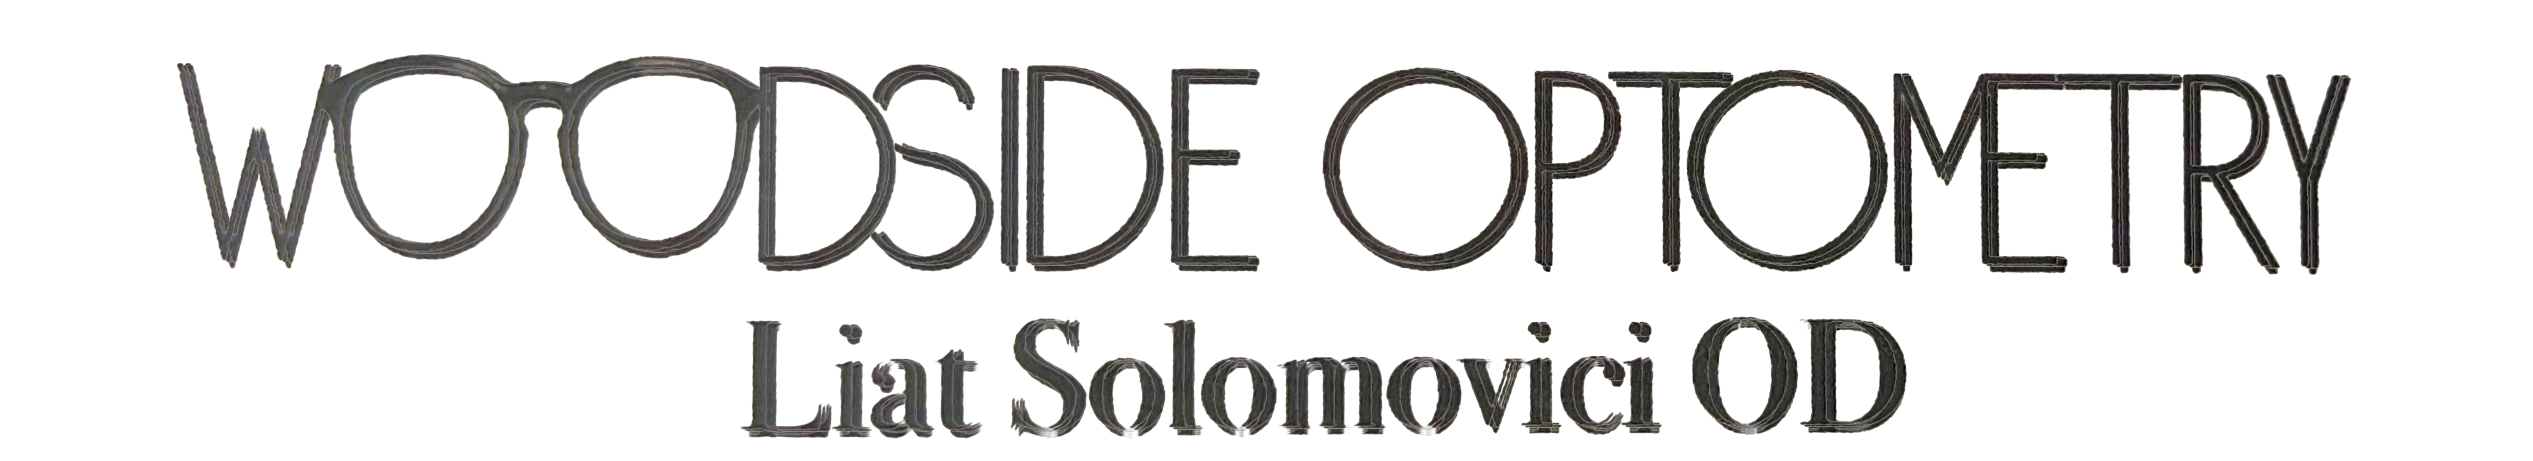 Woodside Optometry-Liat Solomovici OD